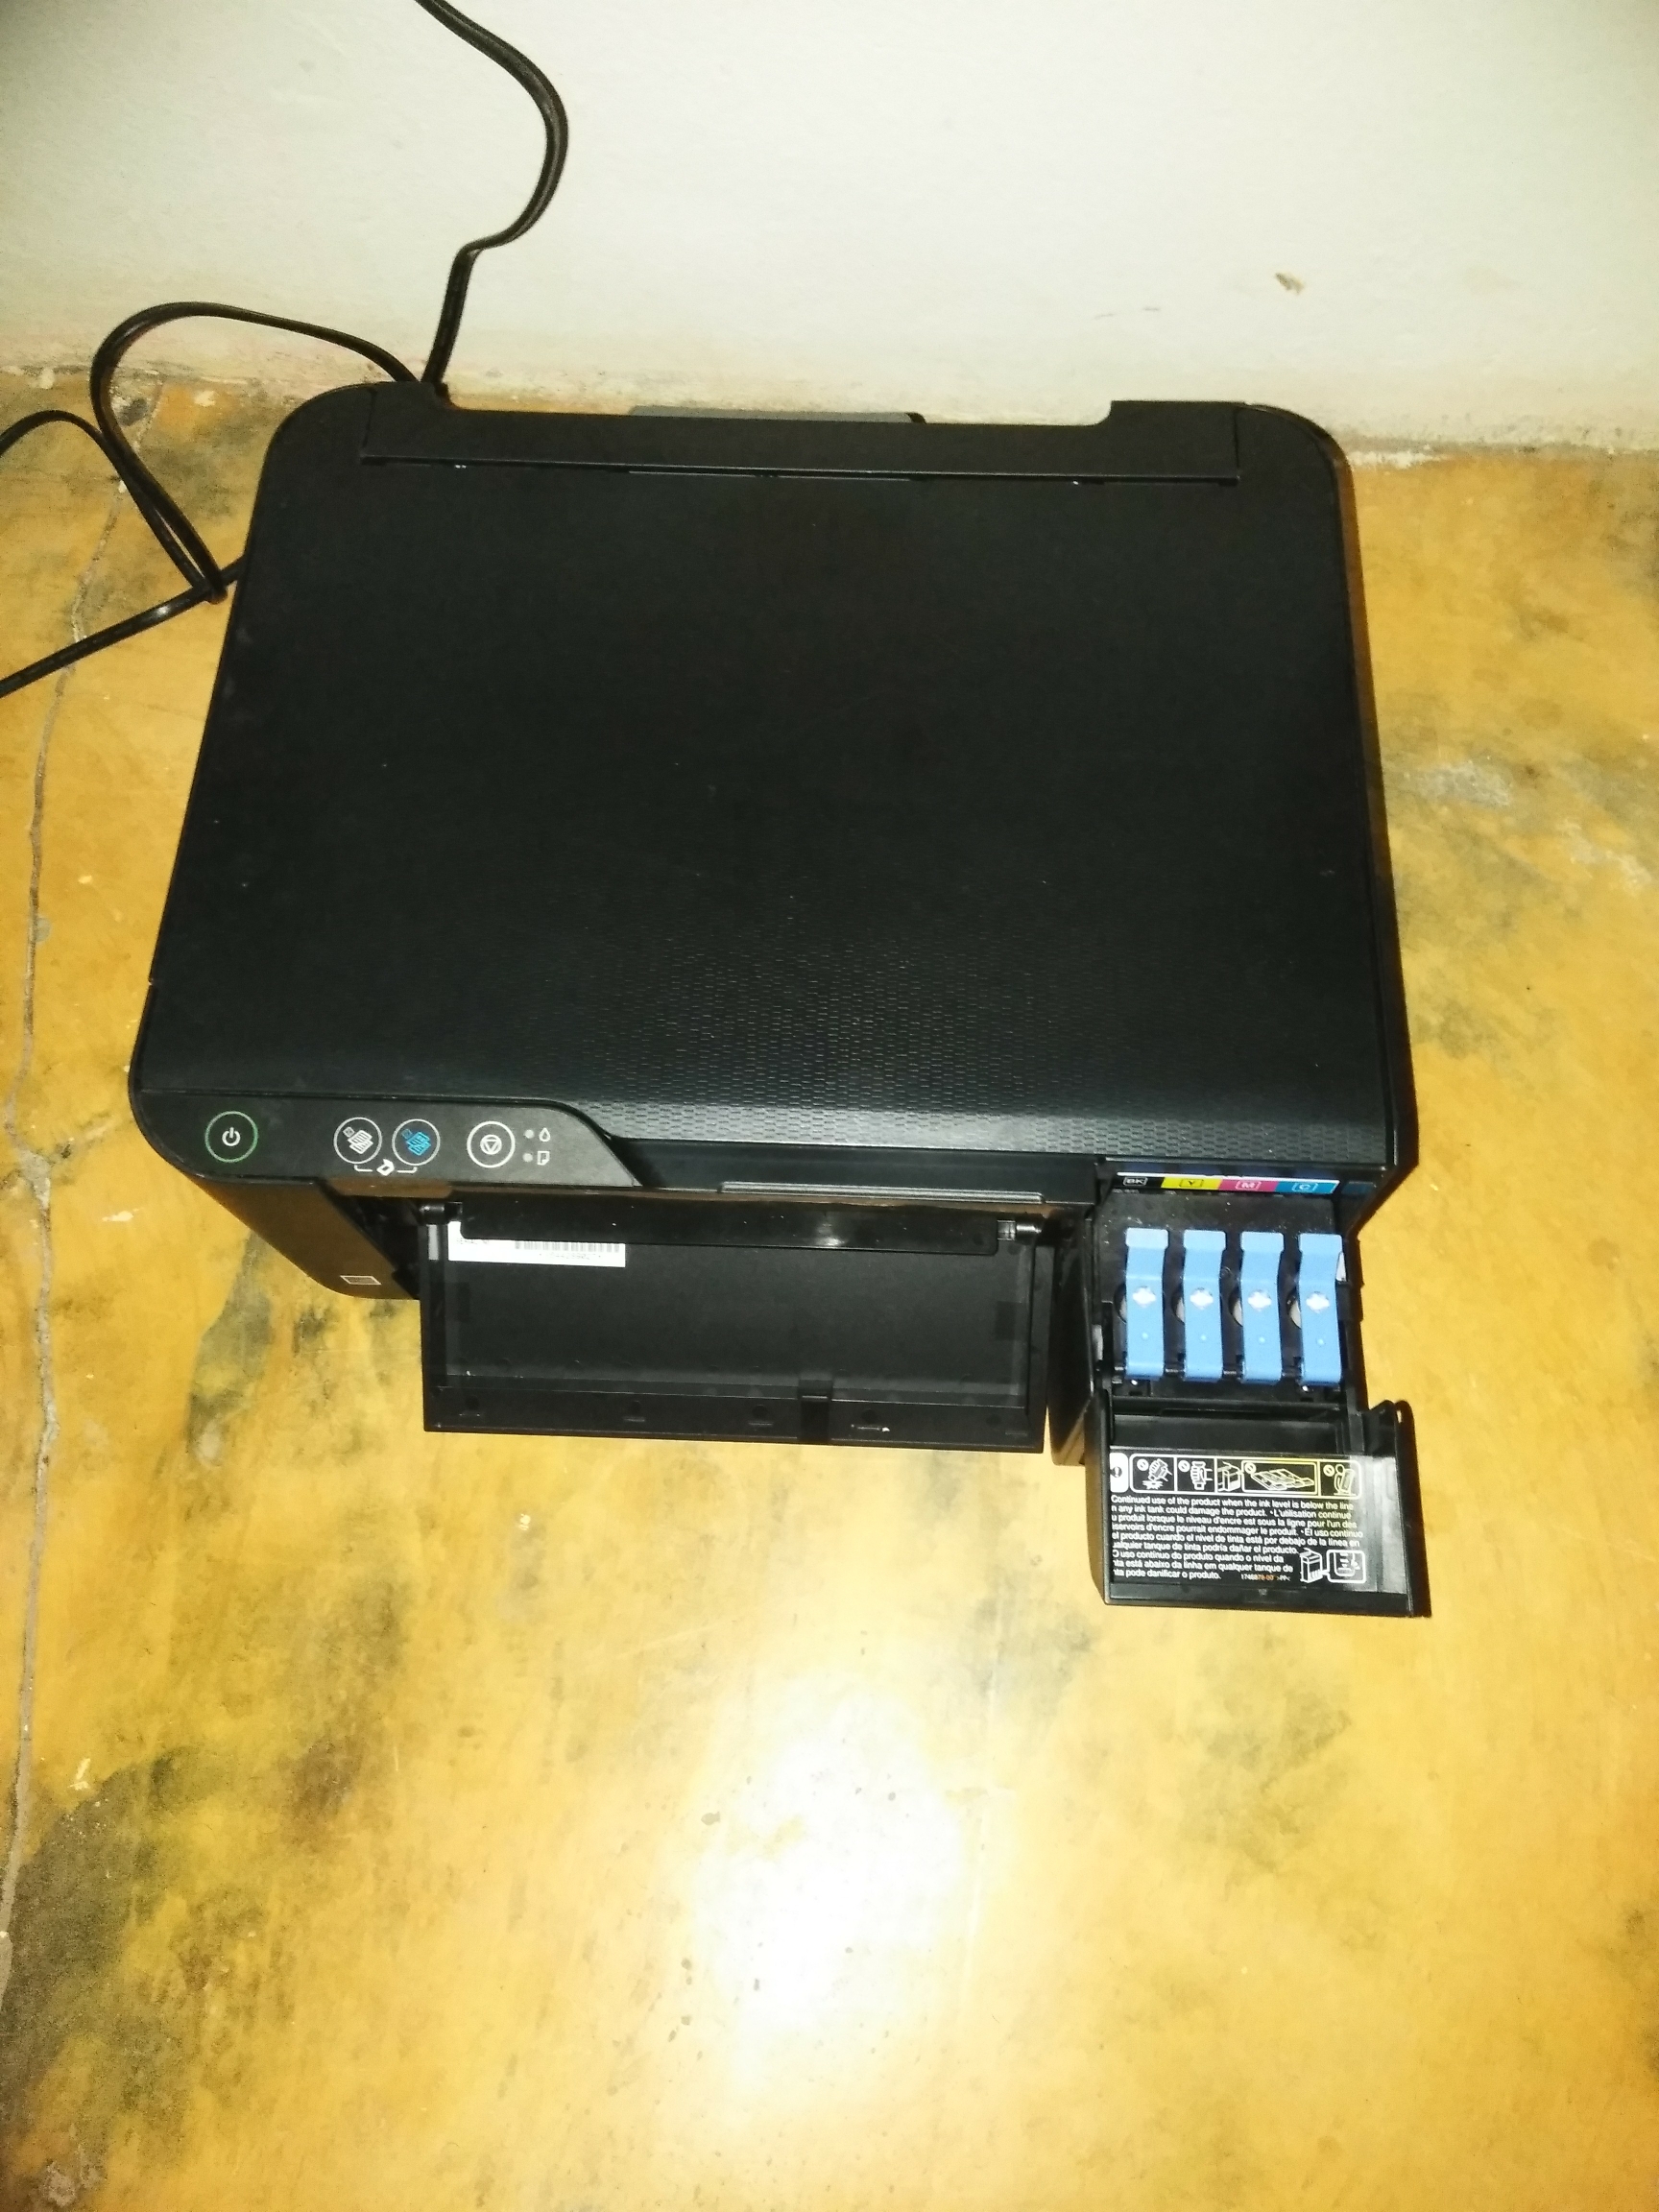 impresoras y scanners - Vendo impresora Epson 3110 en condiciones muy buena con solo 5 meses de uso